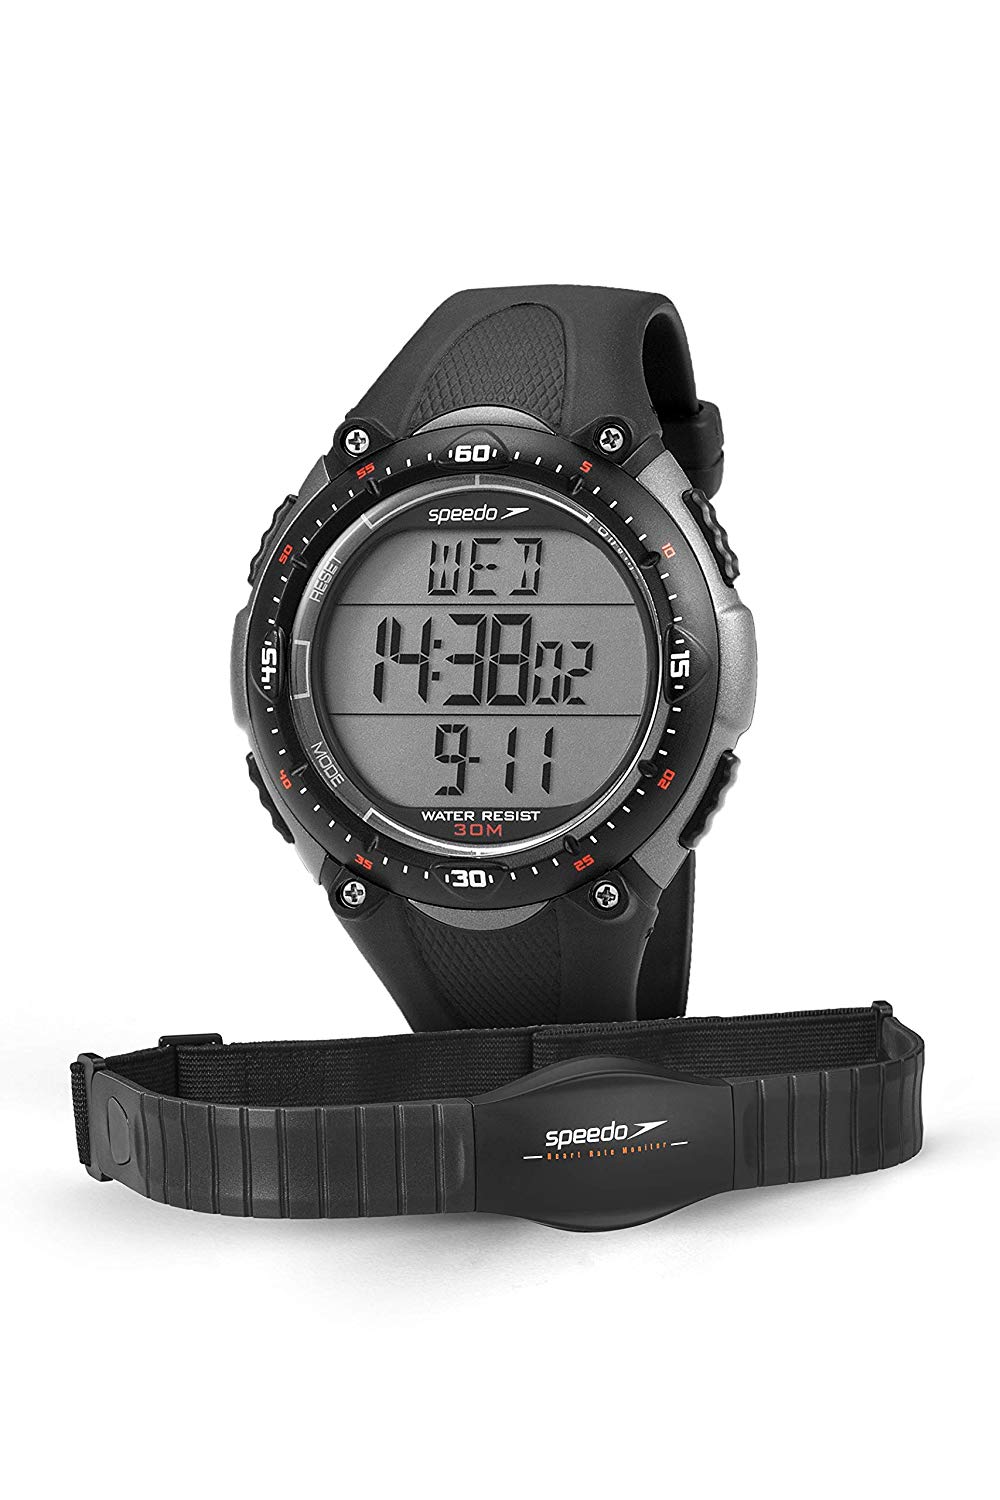 Relógio Monitor Cardíaco Speedo Jest 80565g0epnp